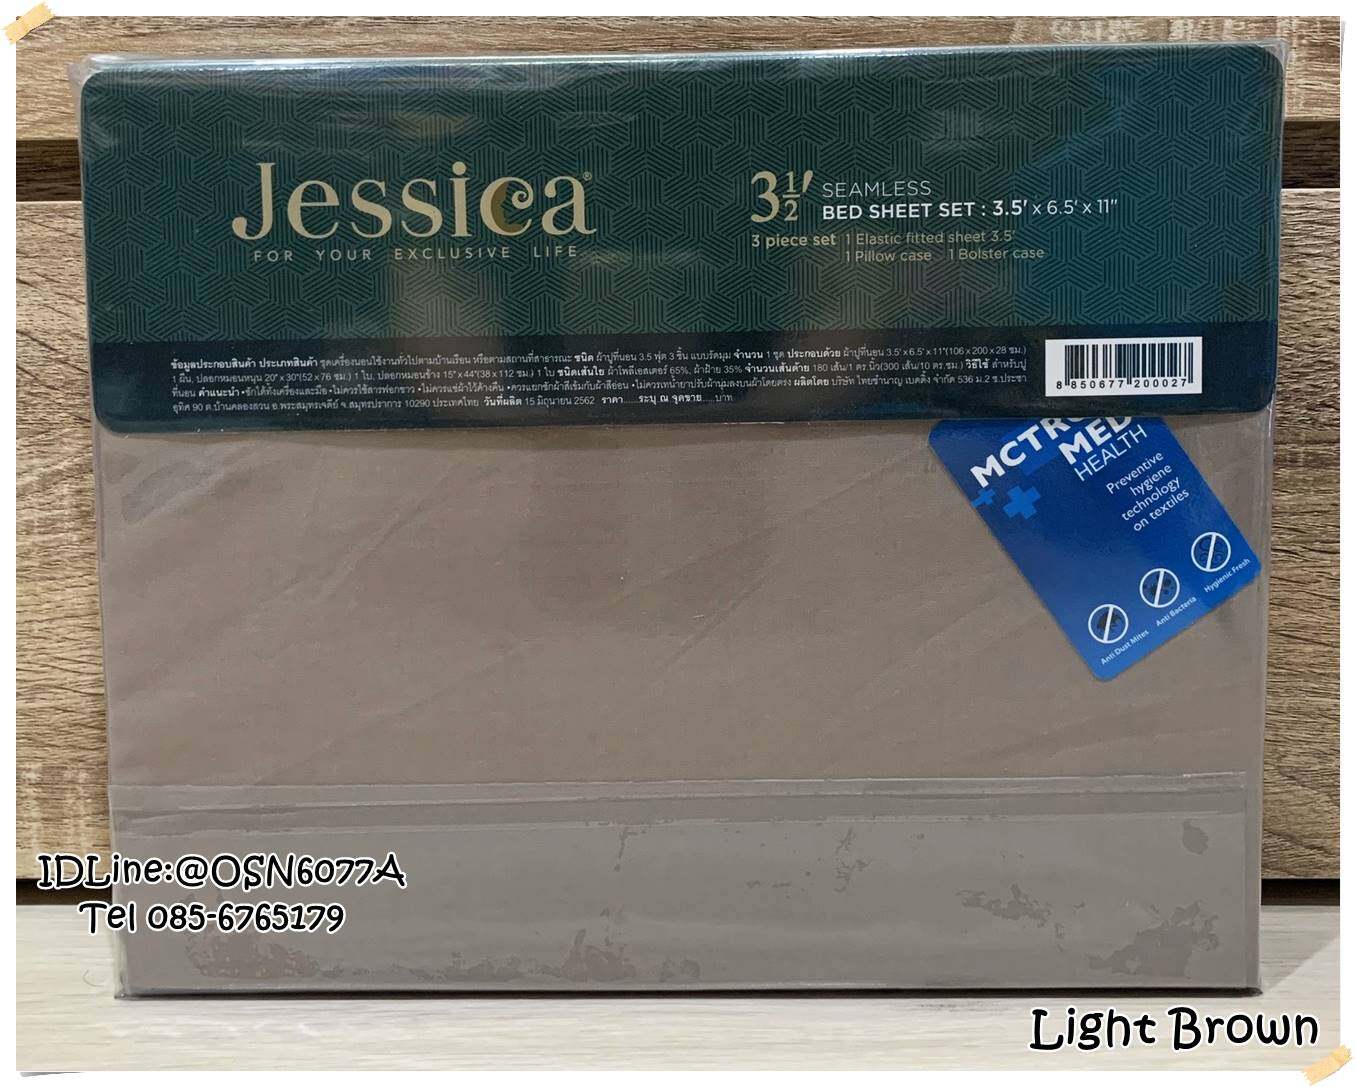 JESSICE ชุดผ้าปูที่นอน (ไม่รวมผ้านวม)  เจสสิก้า สีพื้น ลิขสิทธิ์แท้100% No.1130 สี Light Brown สี Light Brownขนาดสินค้า 3.5 ฟุตลักษณะสินค้า ชุดผ้าปูที่นอน